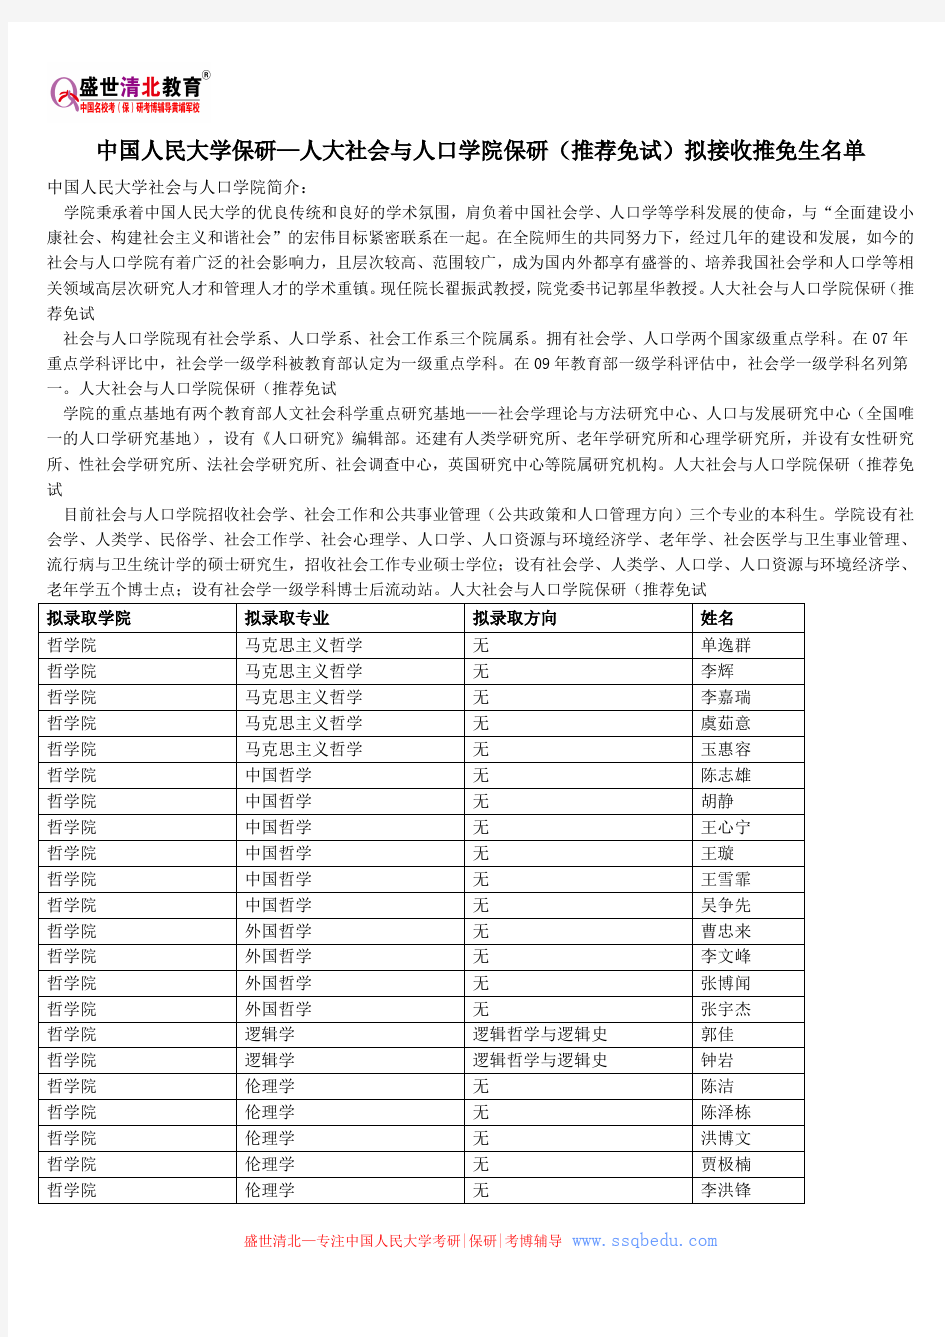 中国人民大学保研—人大社会与人口学院保研(推荐免试)拟接收推免生名单